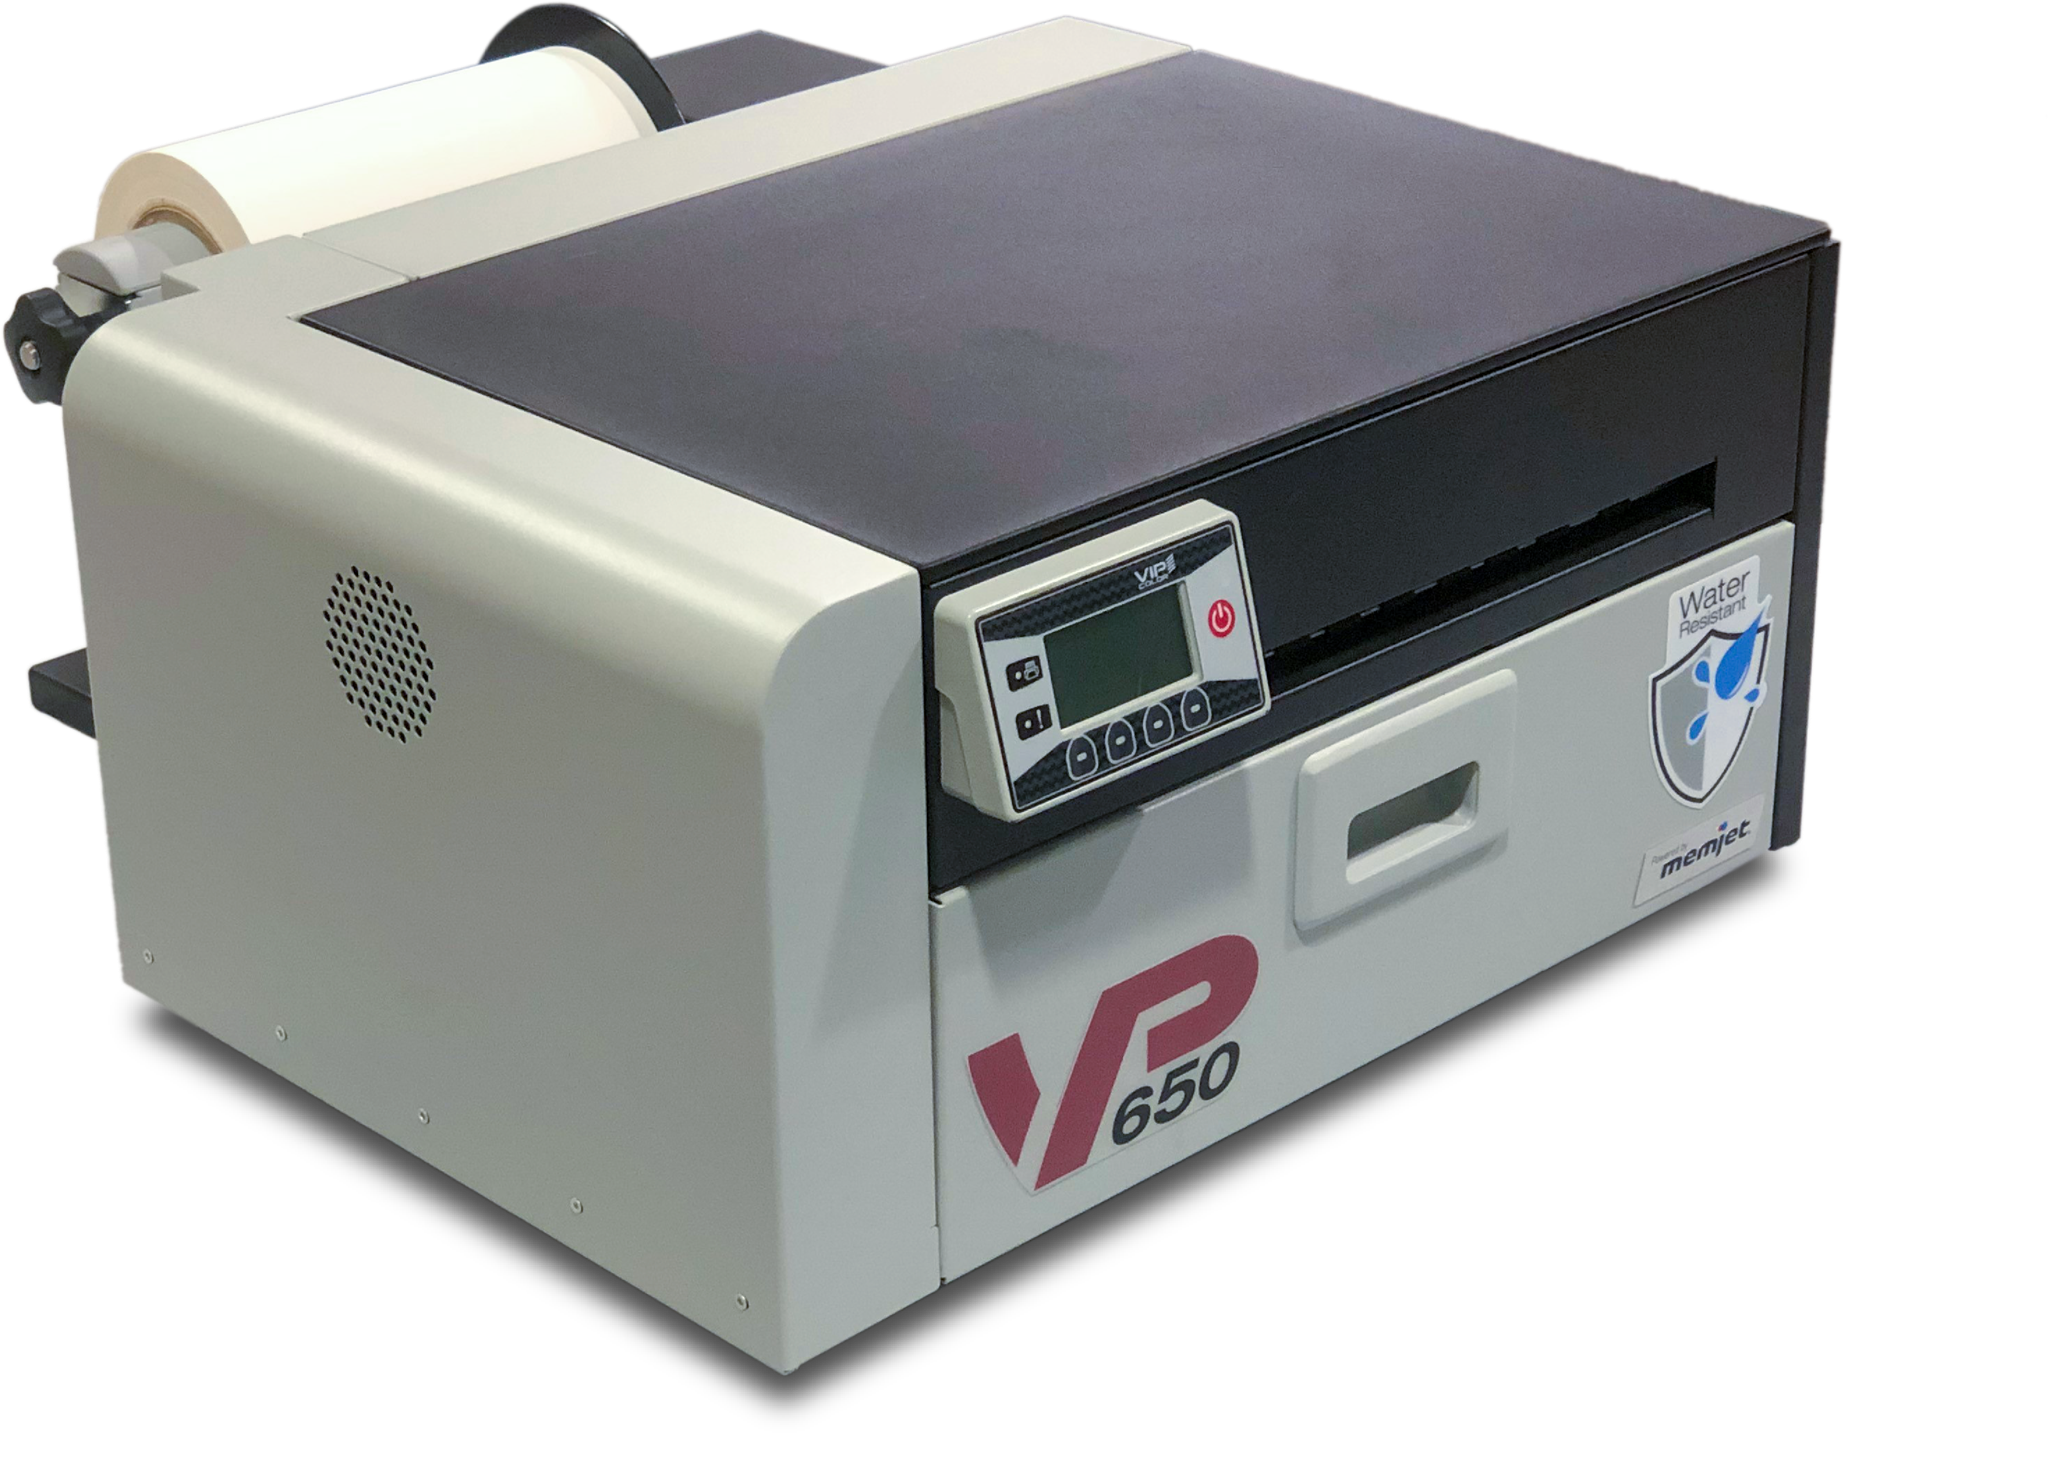 VIP COLOR VP650 ラベルプリンター（外部アンワインダー、プリントヘッド、インクセットを含むの画像